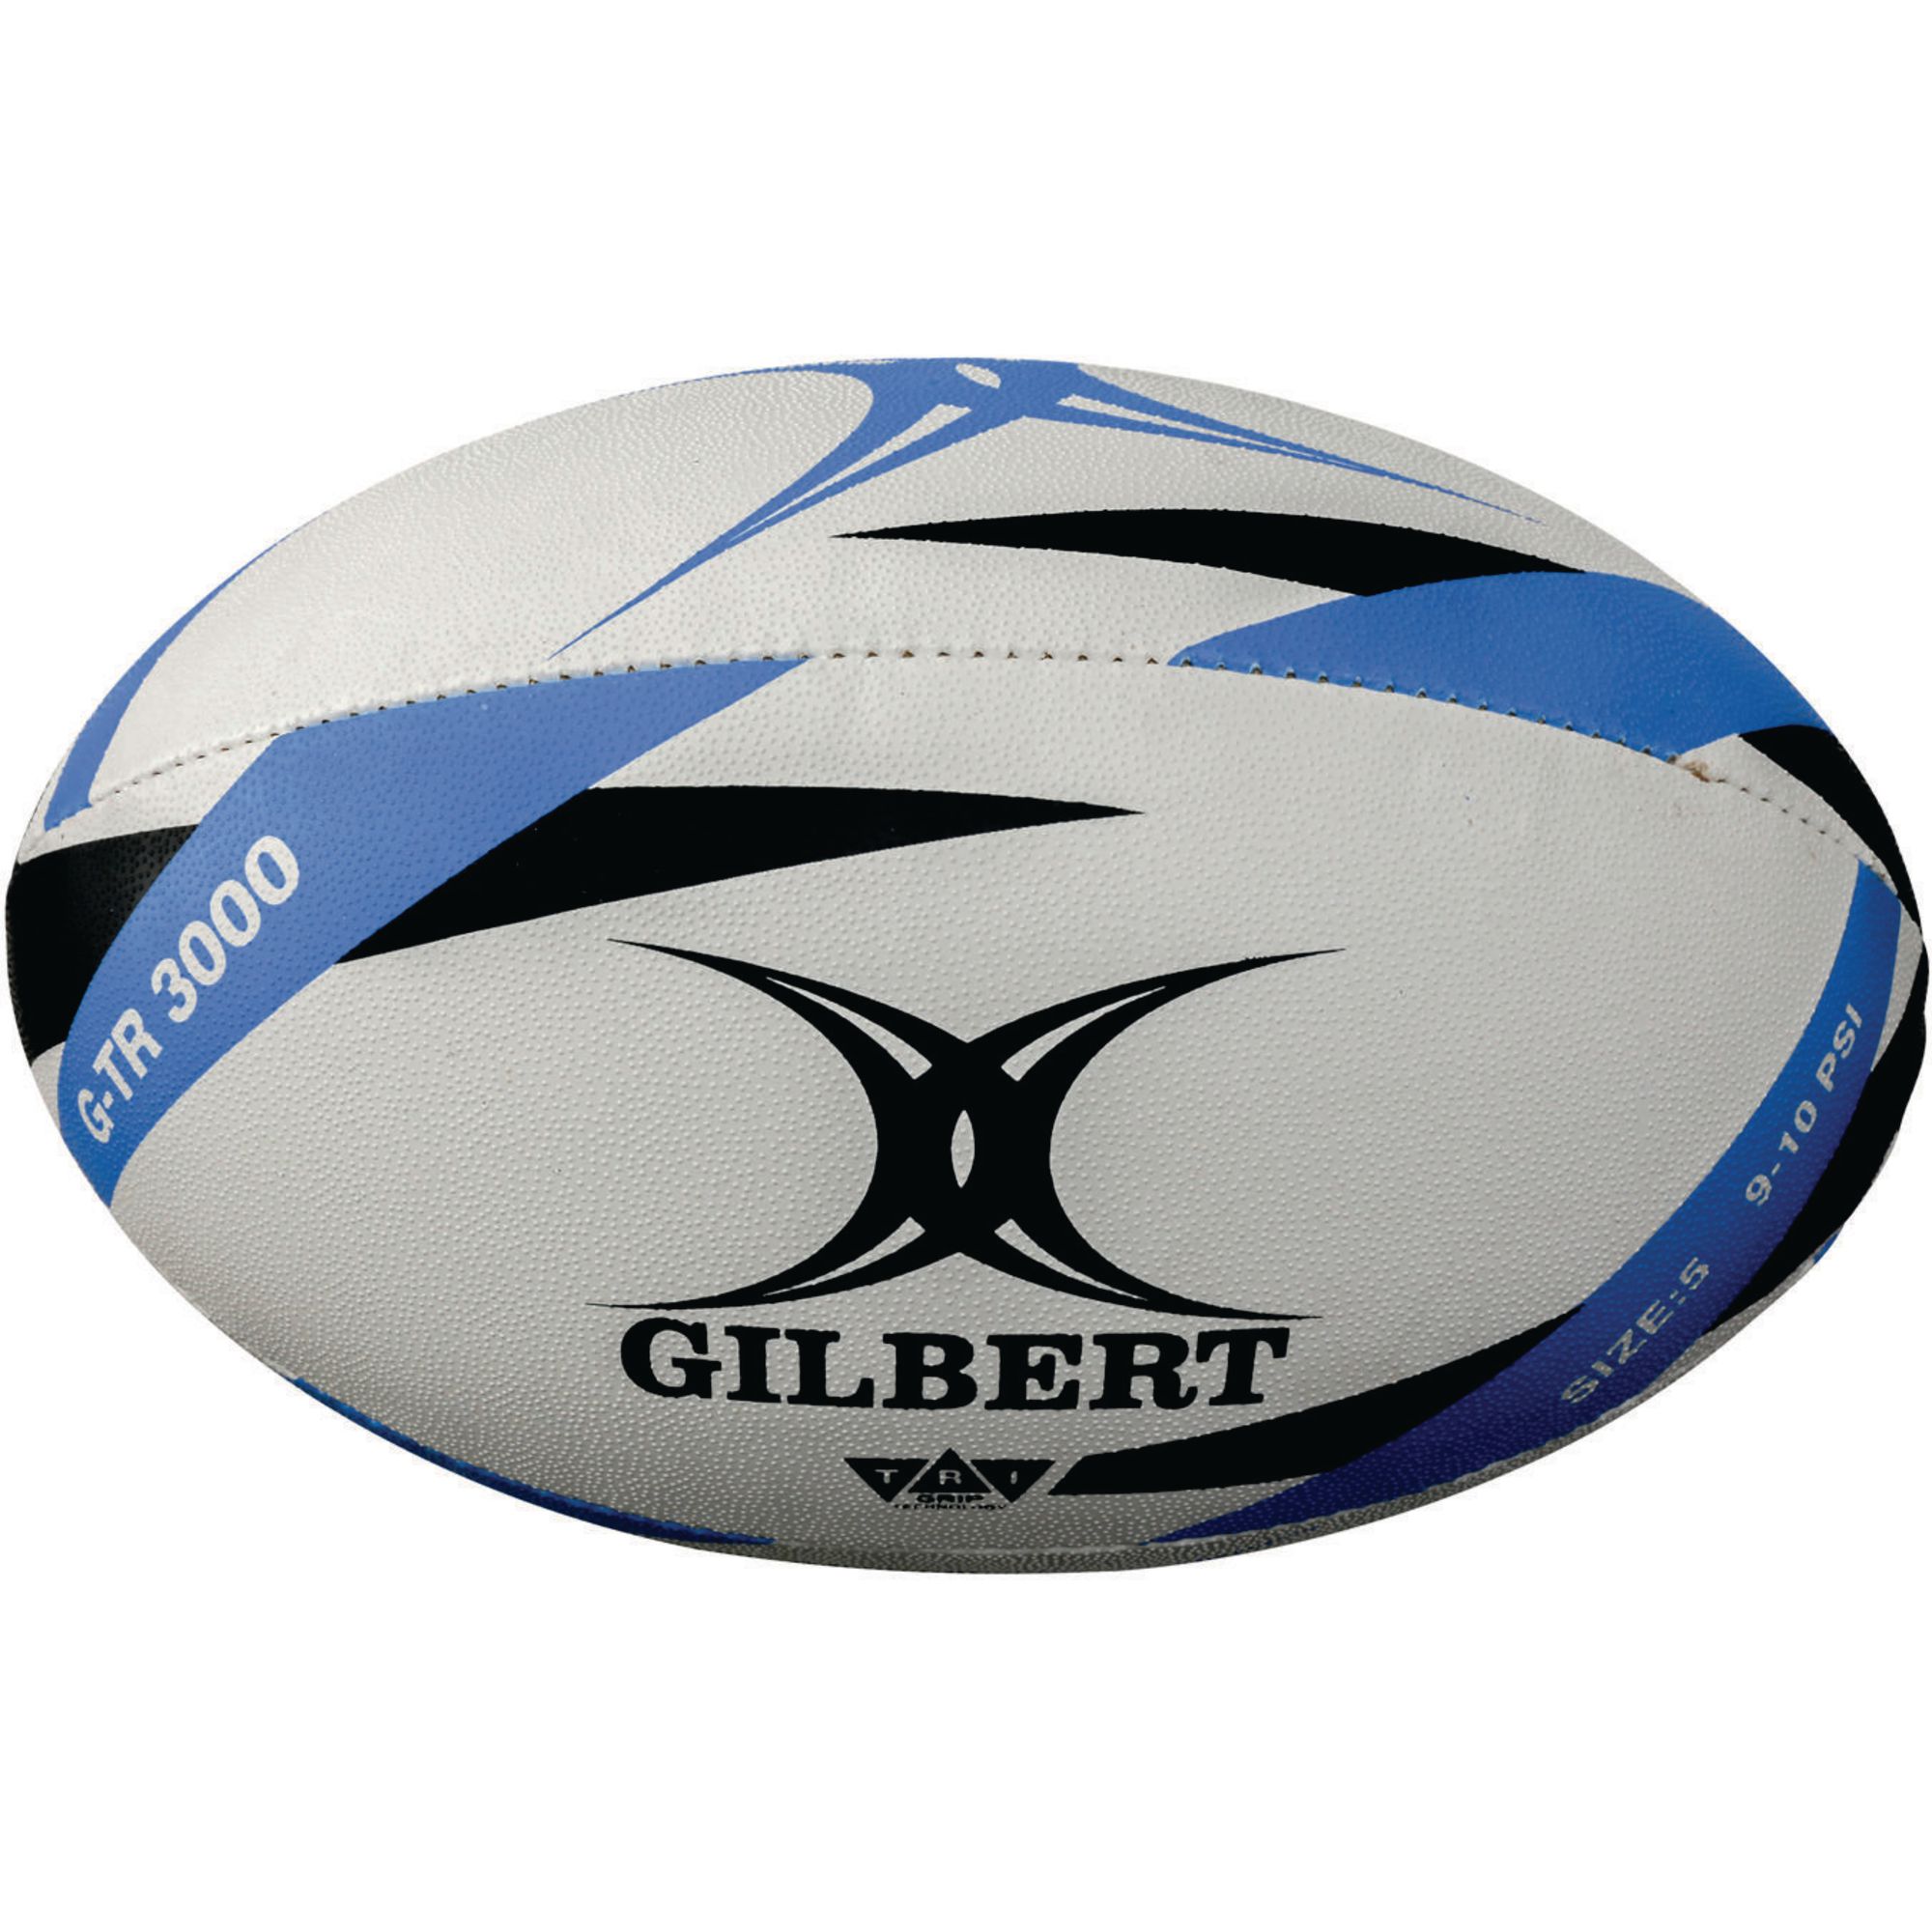 Gilbert G-TR3000 Rugby Ball Sz5 Wht/Blu